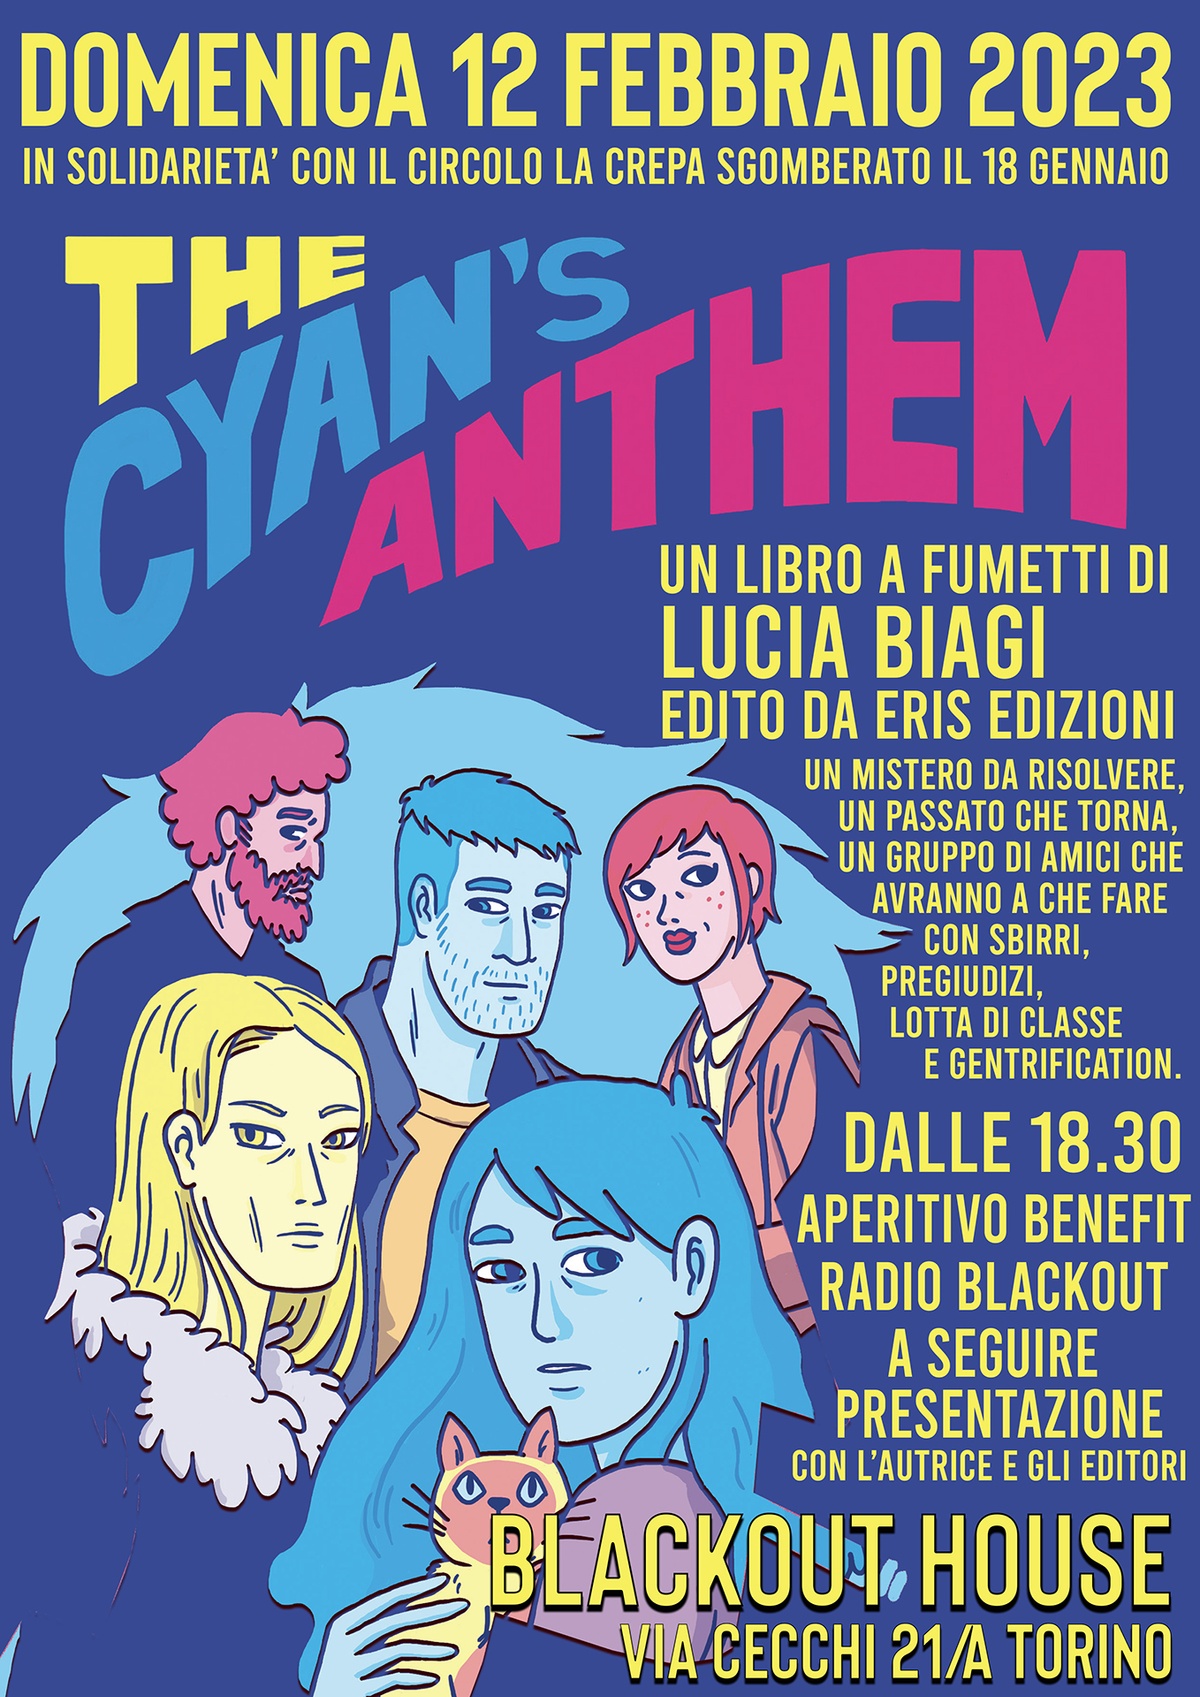 [23-02-12] Presentazione Fumetto "The Cyan’s Athem" di Lucia Biagi @ Radio Blackout 105.250